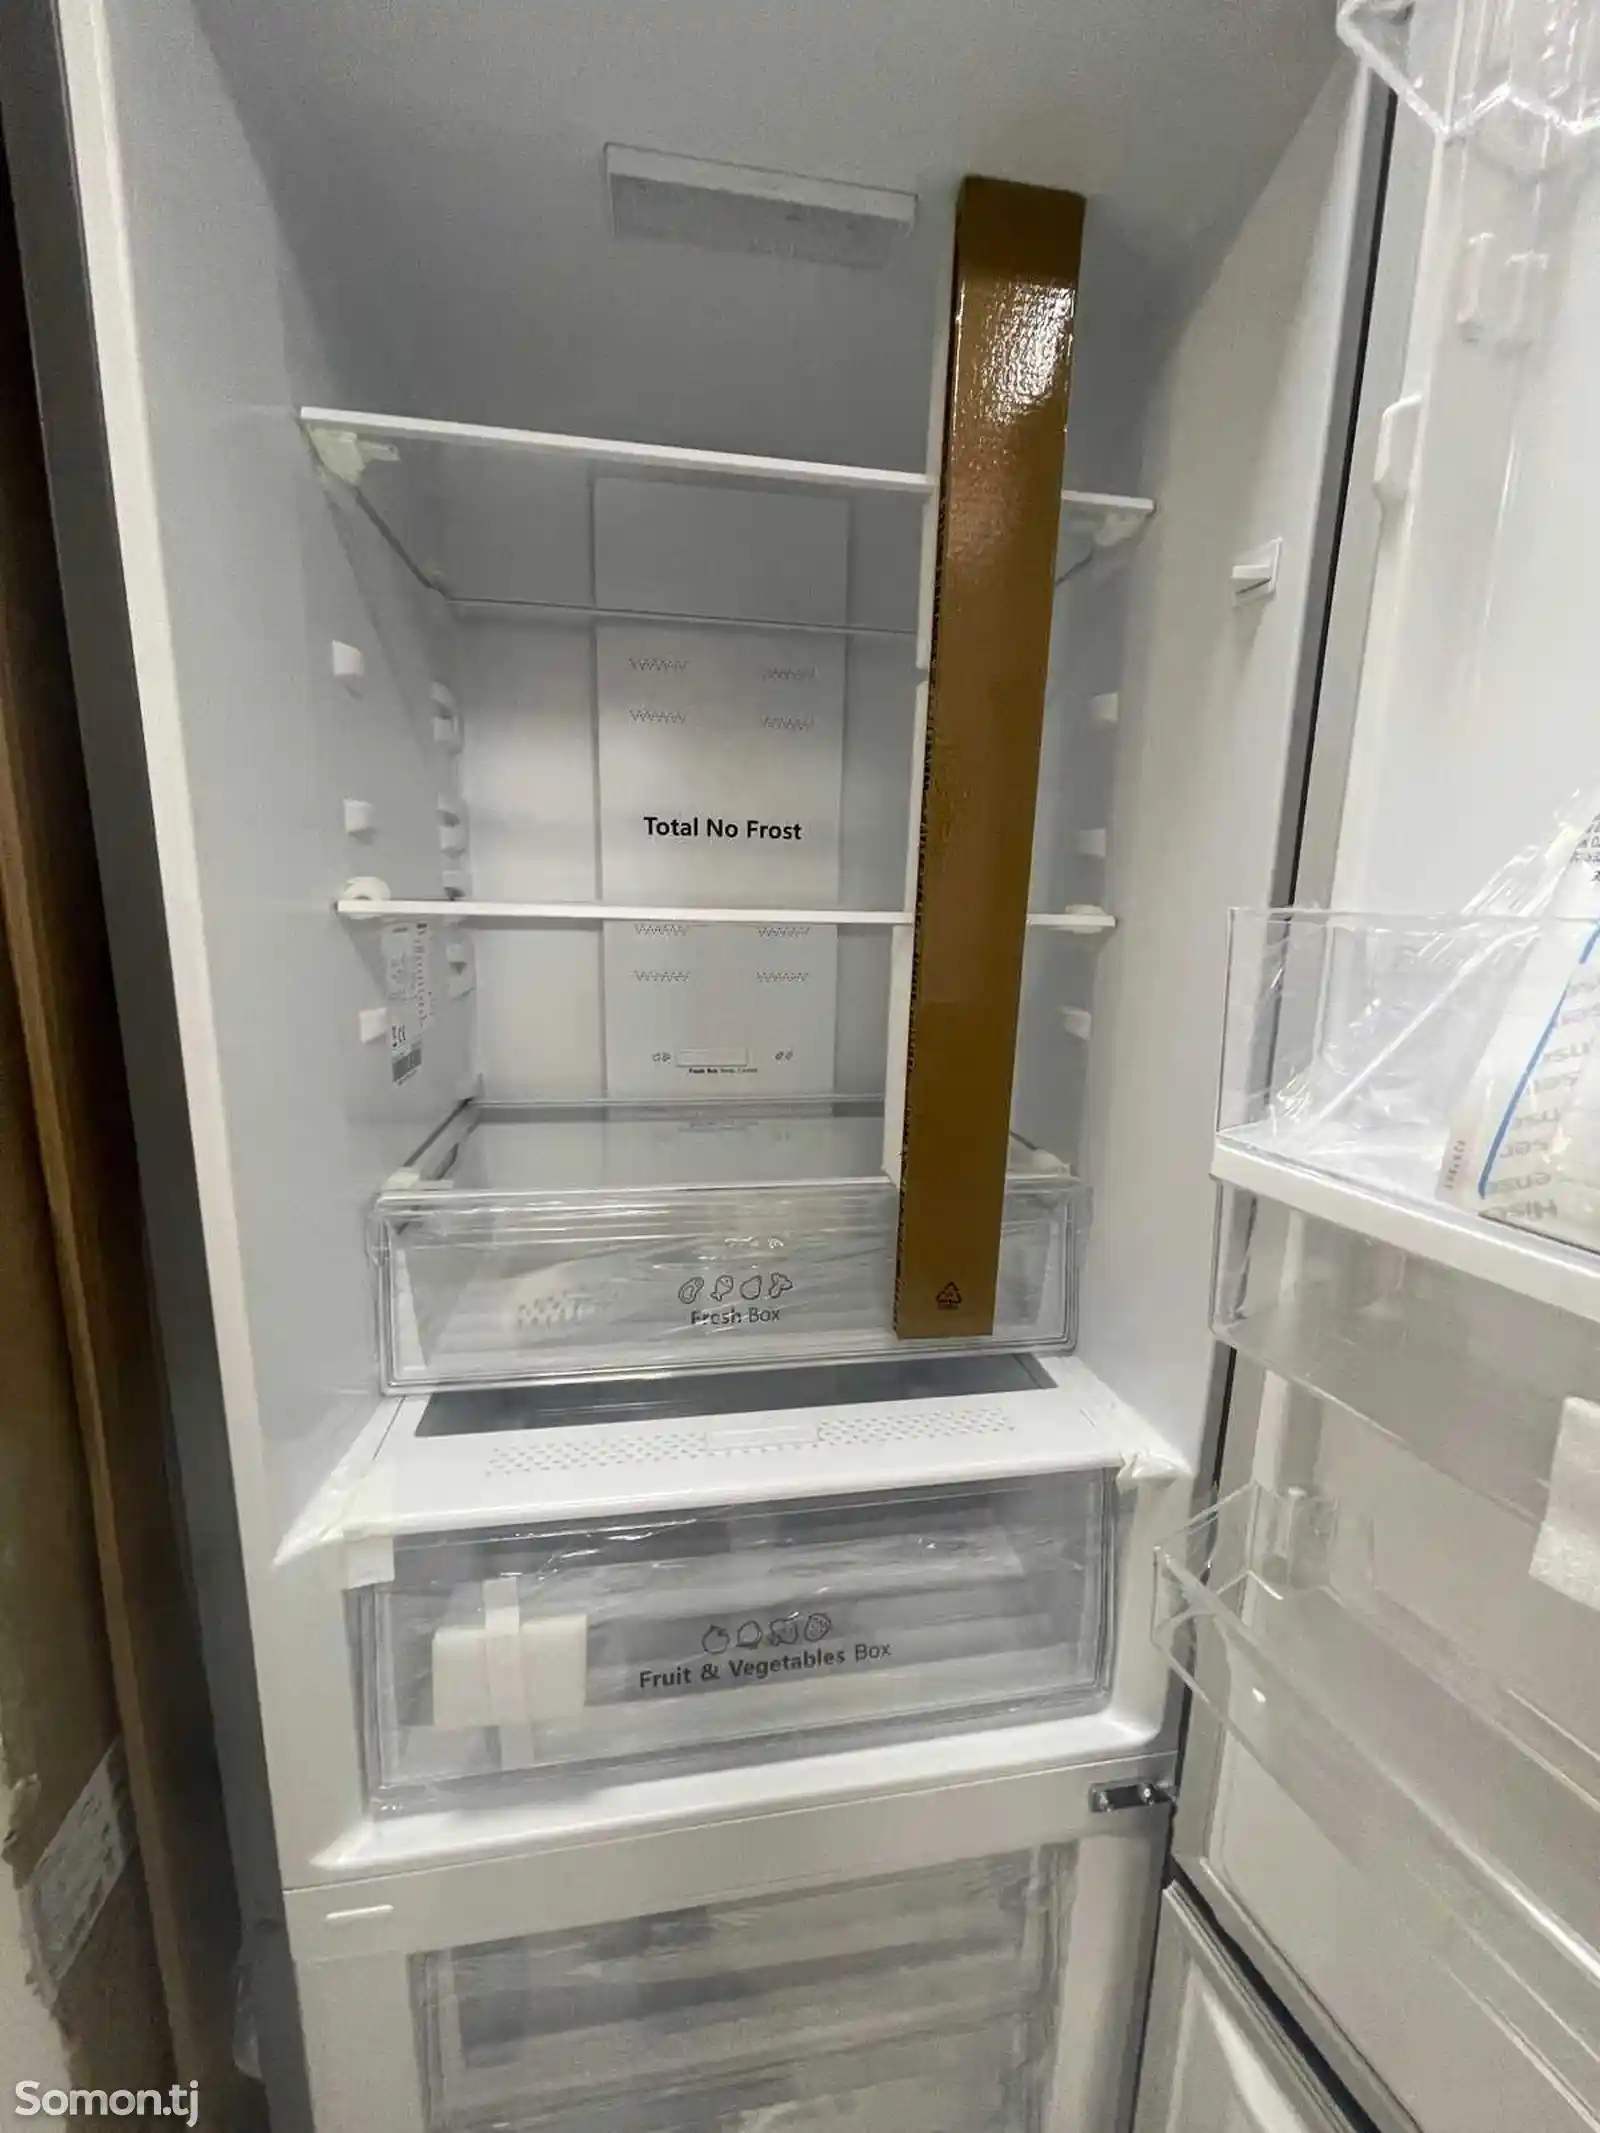 Холодильник Hisense RD39WC-7